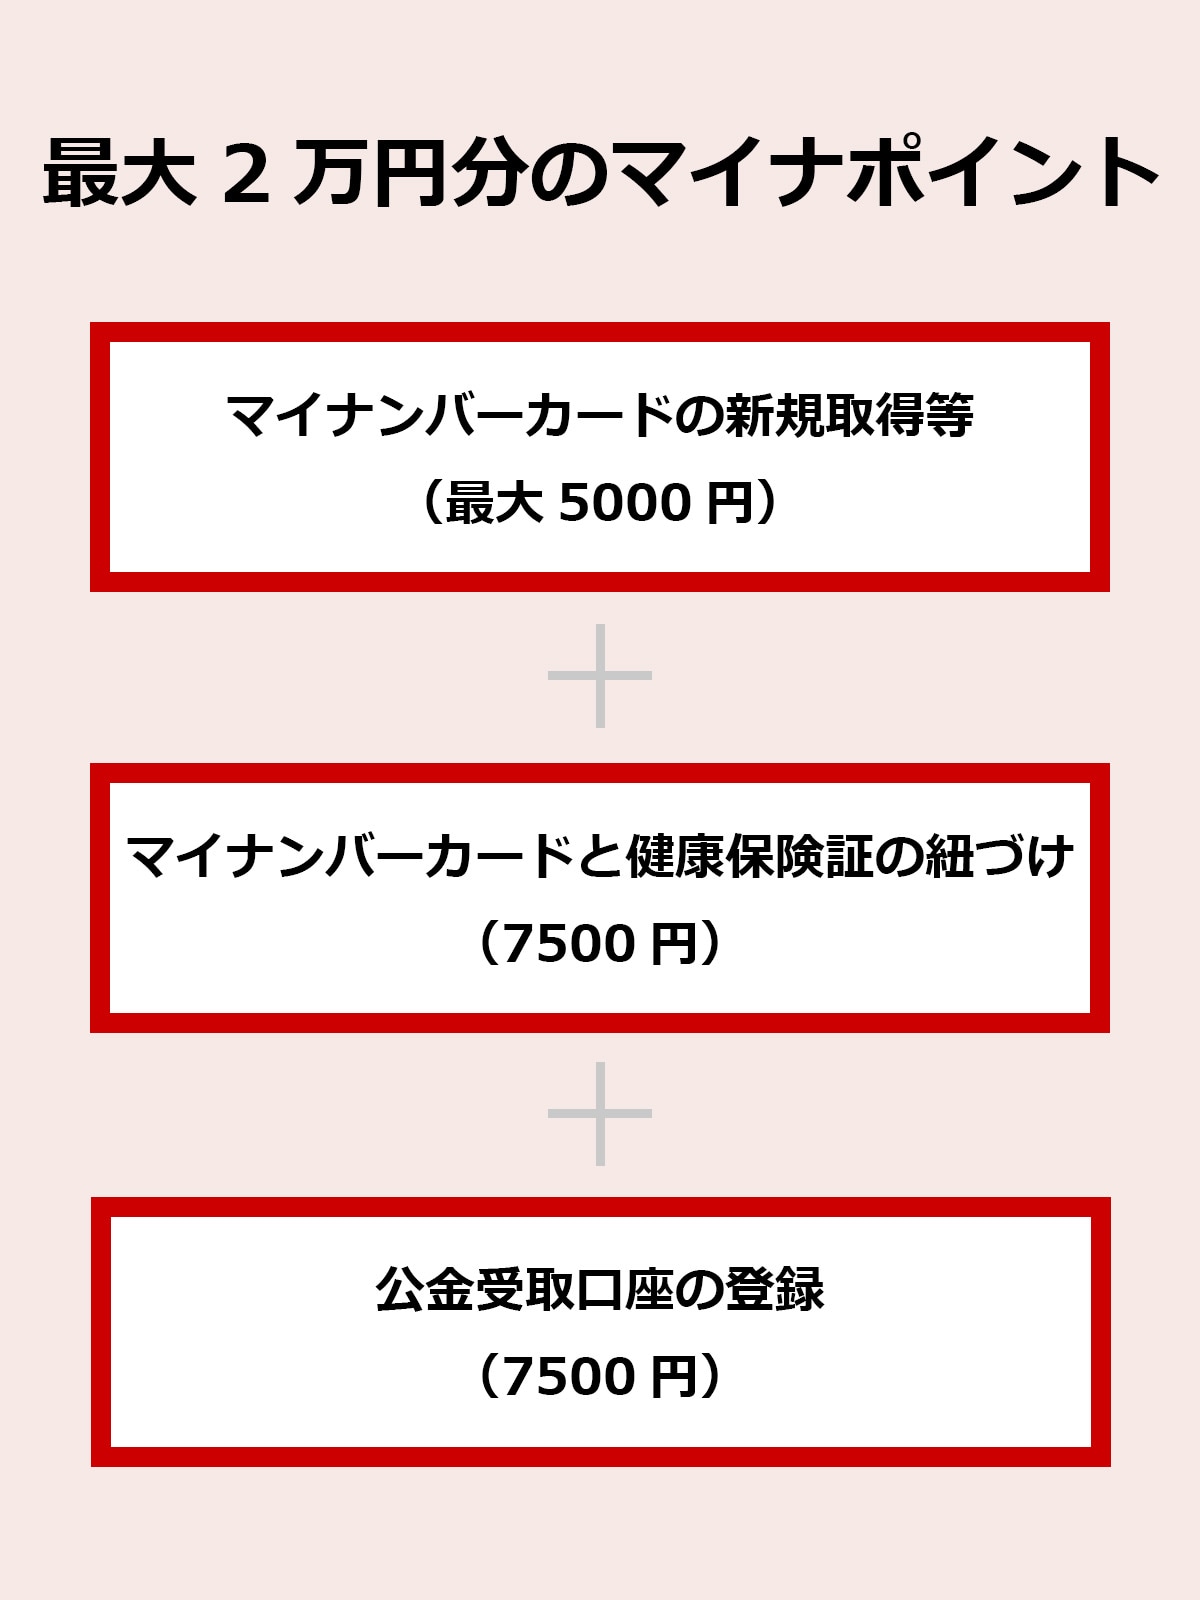 「マイナポイント第2弾」では、3つの条件を満たすと最大2万円分のポイントを獲得することが可能です。